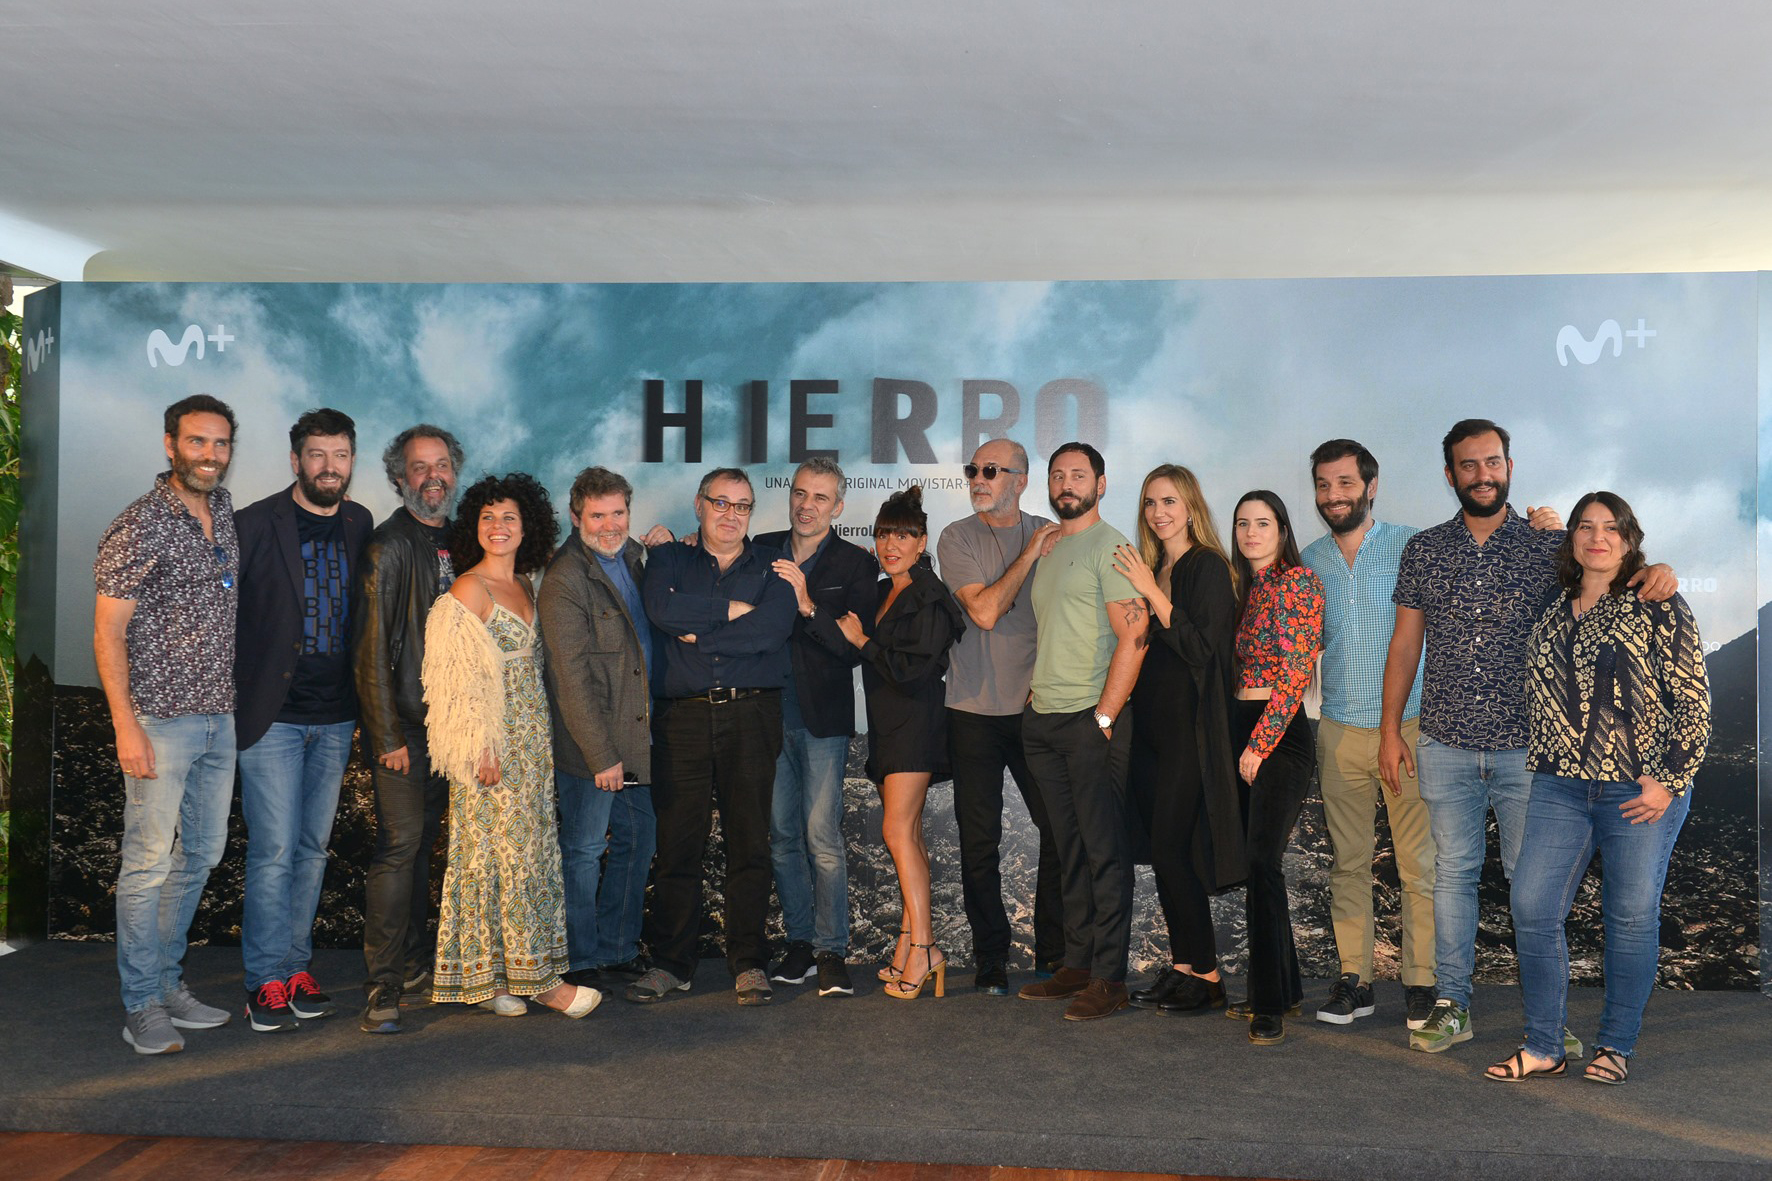 El Cabildo y Promotur promociona el destino El Hierro en Movistar+ con motivo de la segunda temporada de la serie “Hierro”